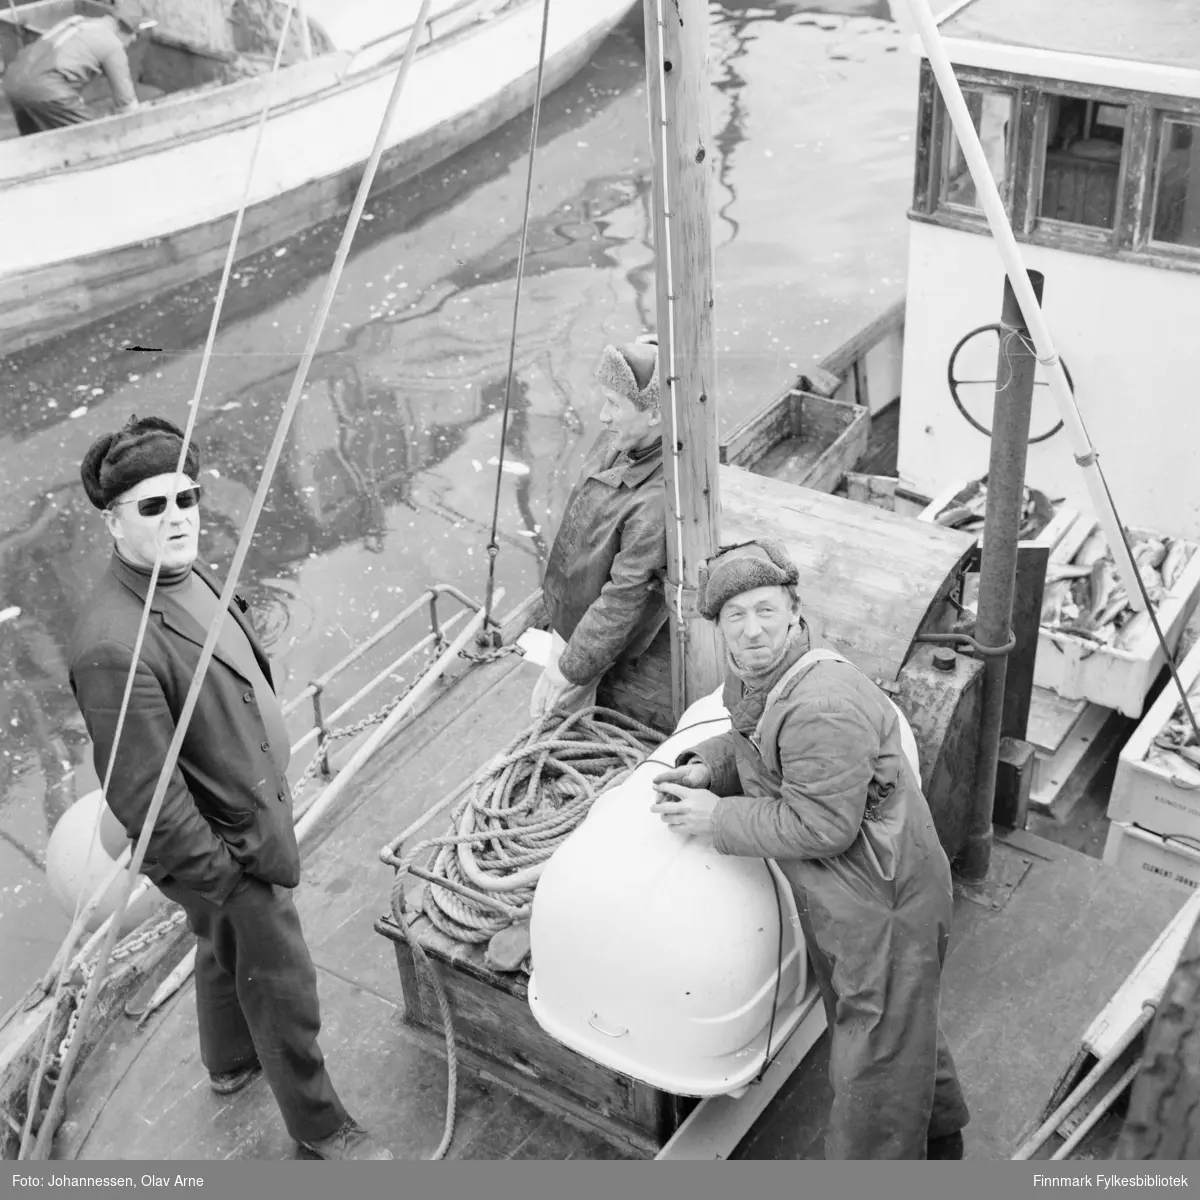 Båten Mk Junior (finnes ennå og er vernet) 

Mannen som lener seg til masten her Karl "Gutta" Pedersen (1927 - 2002) og til høyre for han er broren Rolf Pedersen (født 1919 - død 1987). De var begge fiskere og pleide å ro i lag  

Mannen helt til venstre kan være Harry Hurtig eller broren Roger Hurtig, usikker identifisering. 